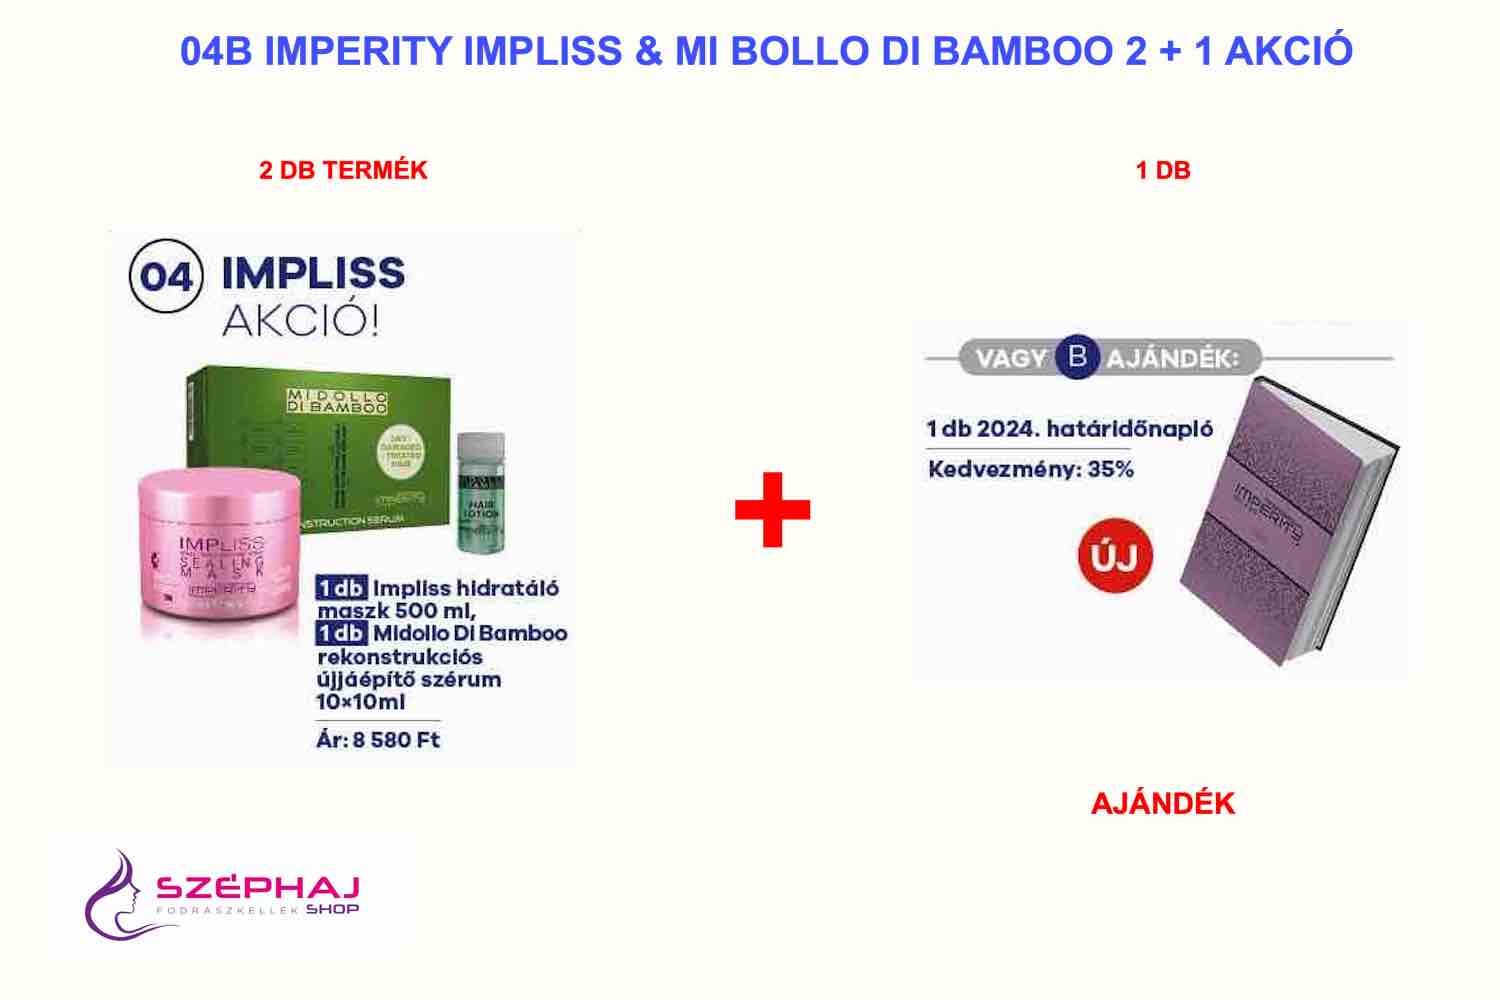 04B IMPERITY IMPLISS 2+1 AKCIÓ